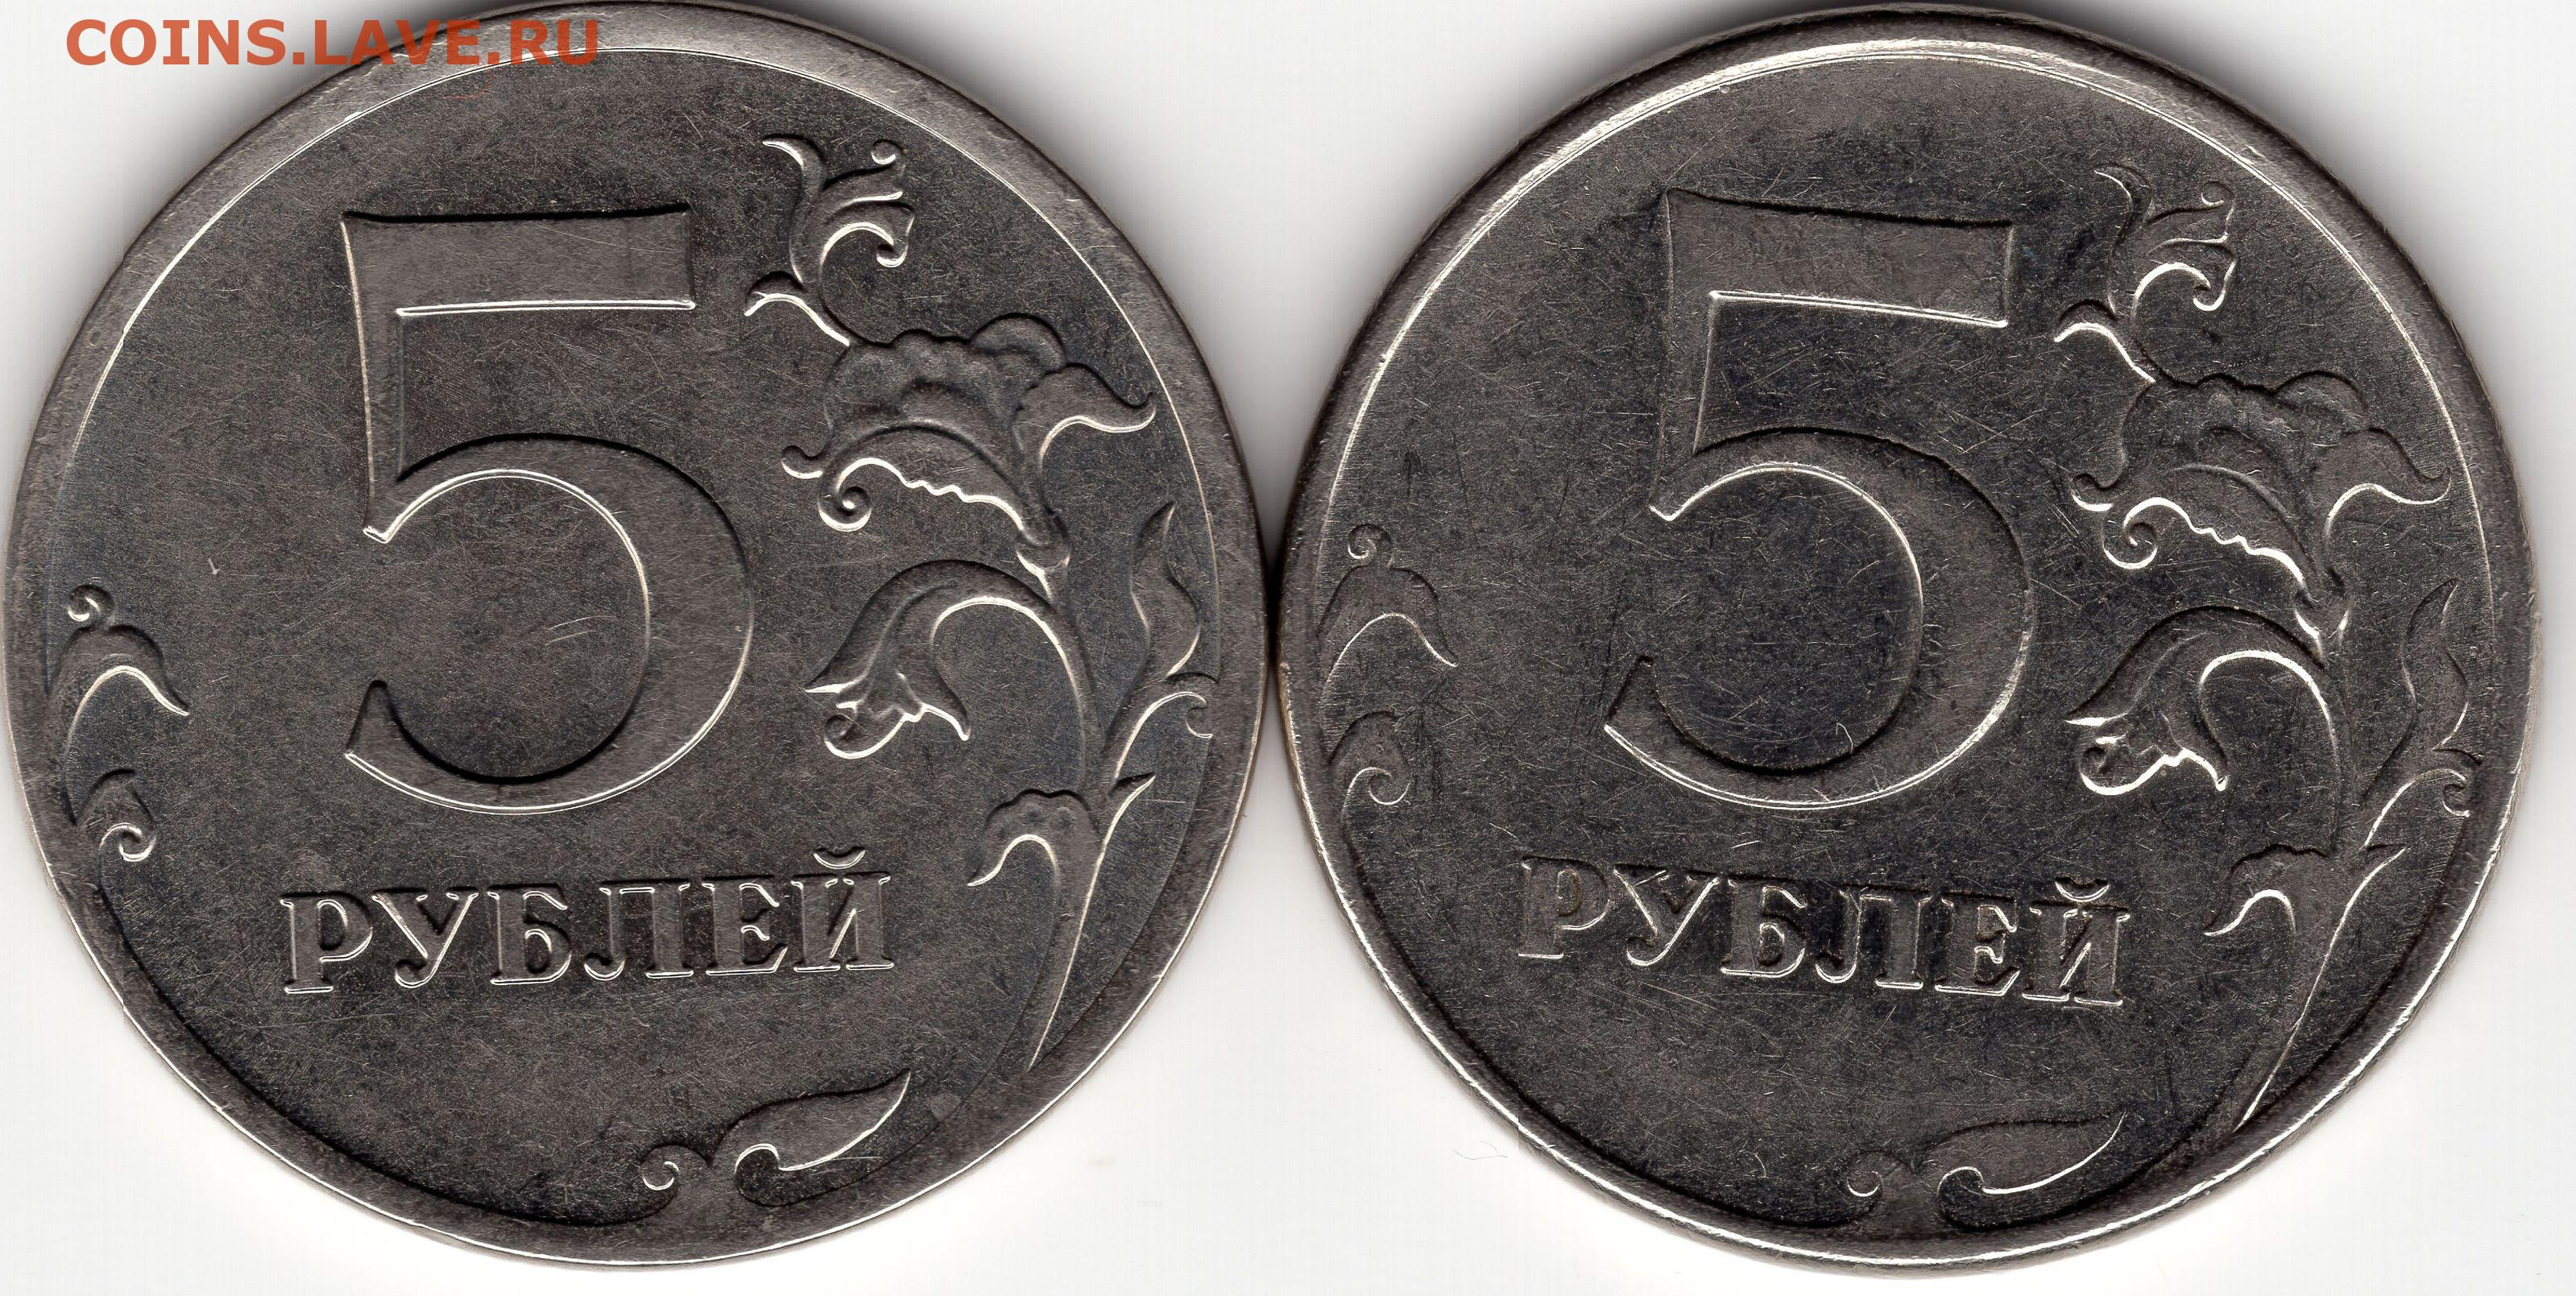 5 рублей стороны. Лицевая сторона 5 рублей. Лицевая сторона монеты 5 рублей. 5 Руб 2012г. Лицевая сторона монеты 5 руб.